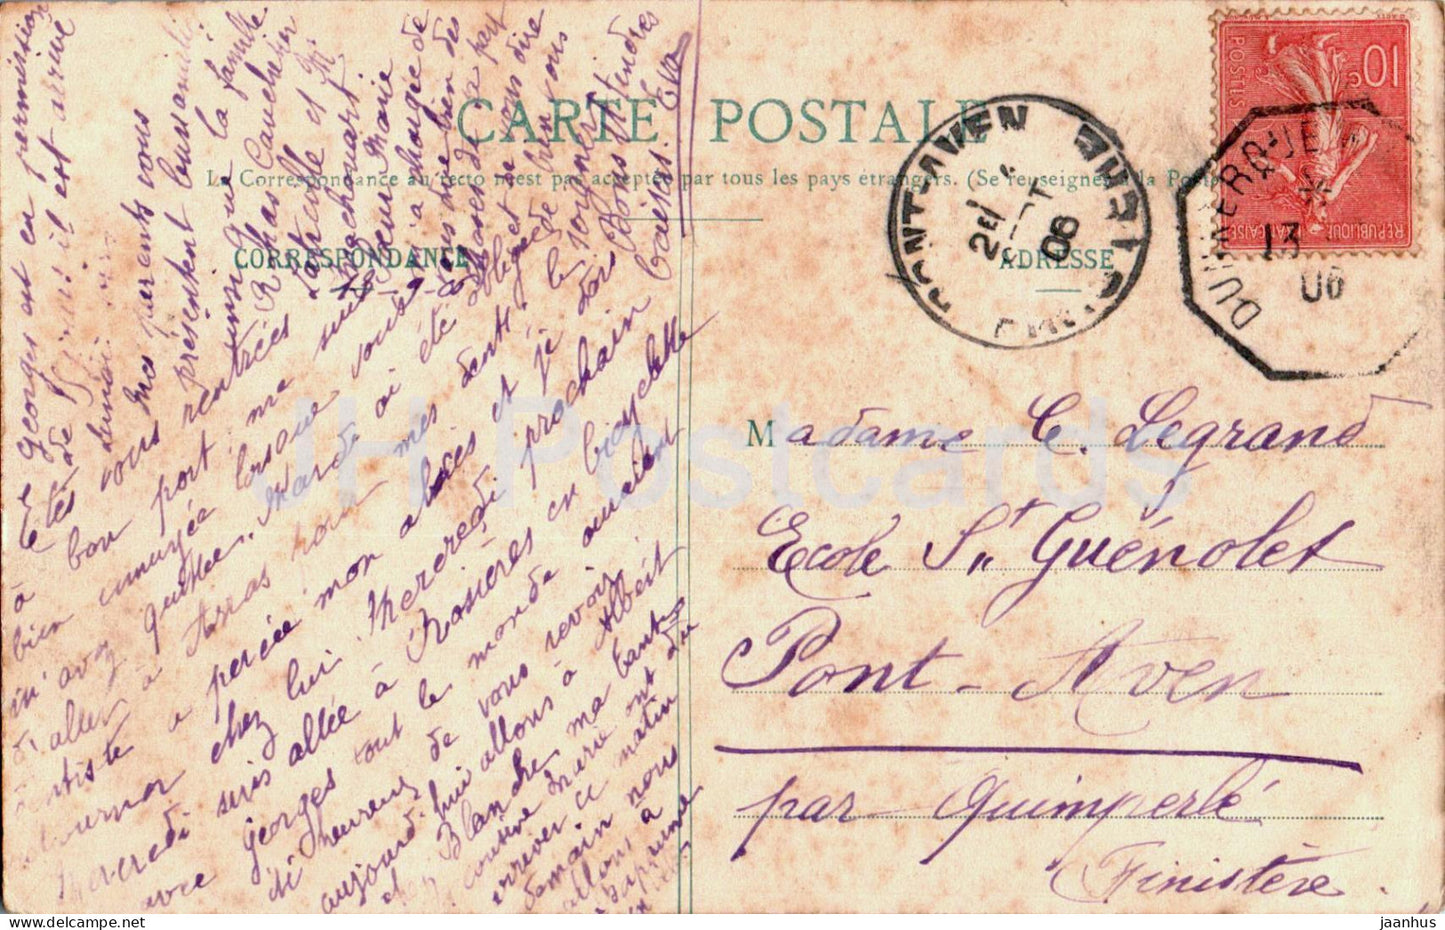 Le Treport – Vue prise de la Maison de Location Z. Levilain – alte Postkarte – 1906 – Frankreich – gebraucht